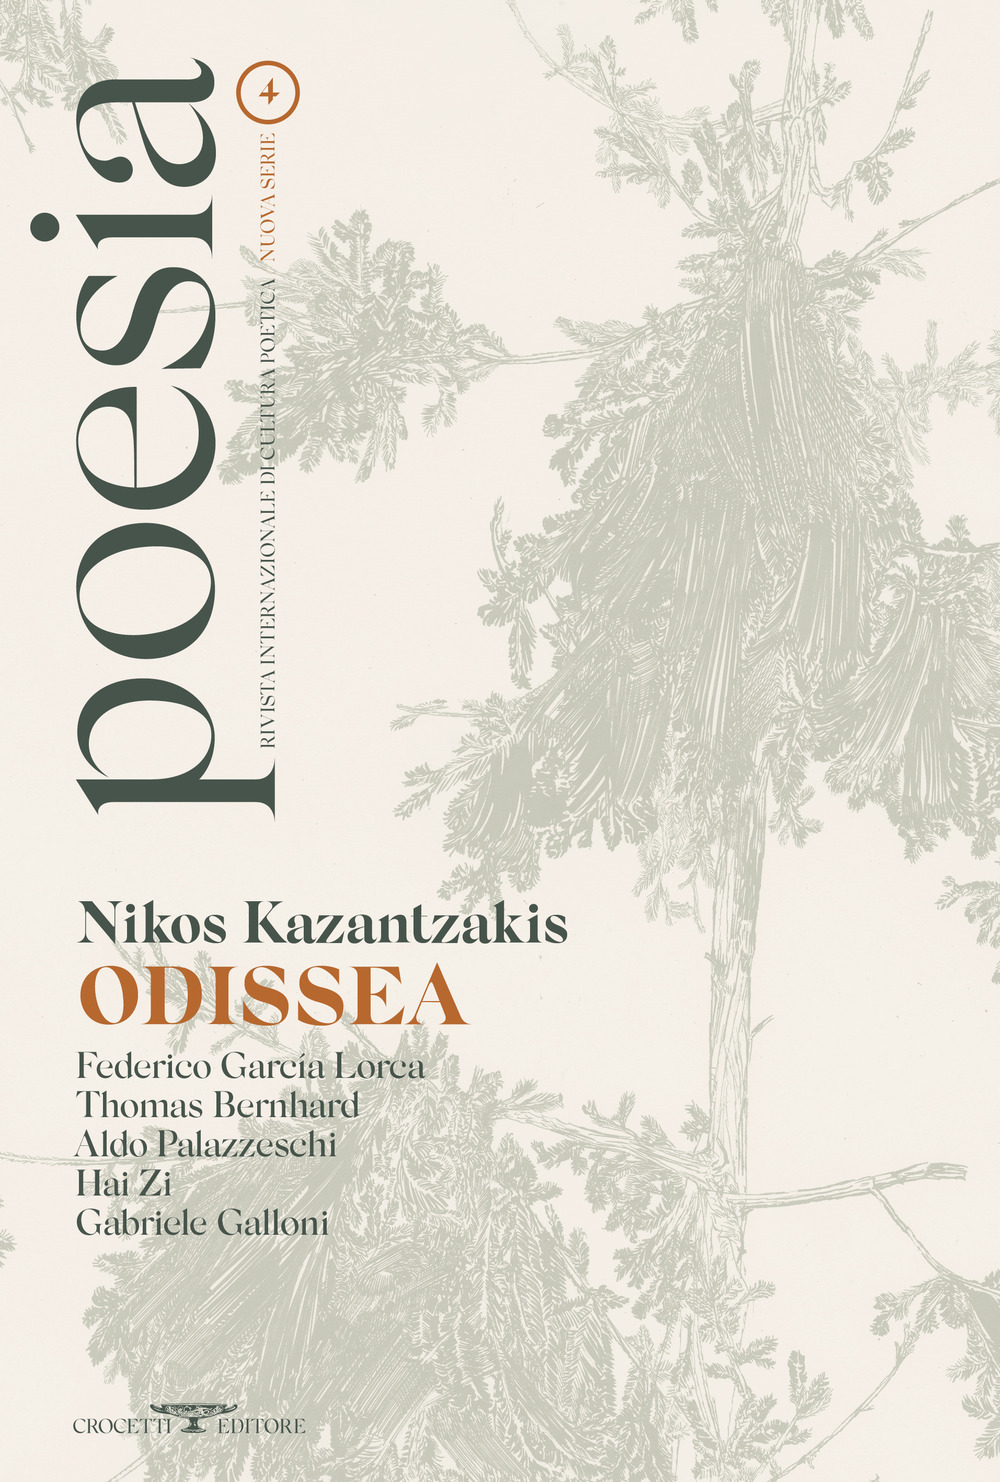 Poesia. Rivista internazionale di cultura poetica. Nuova serie. Vol. 4: Nikos Kazantzakis. Odissea